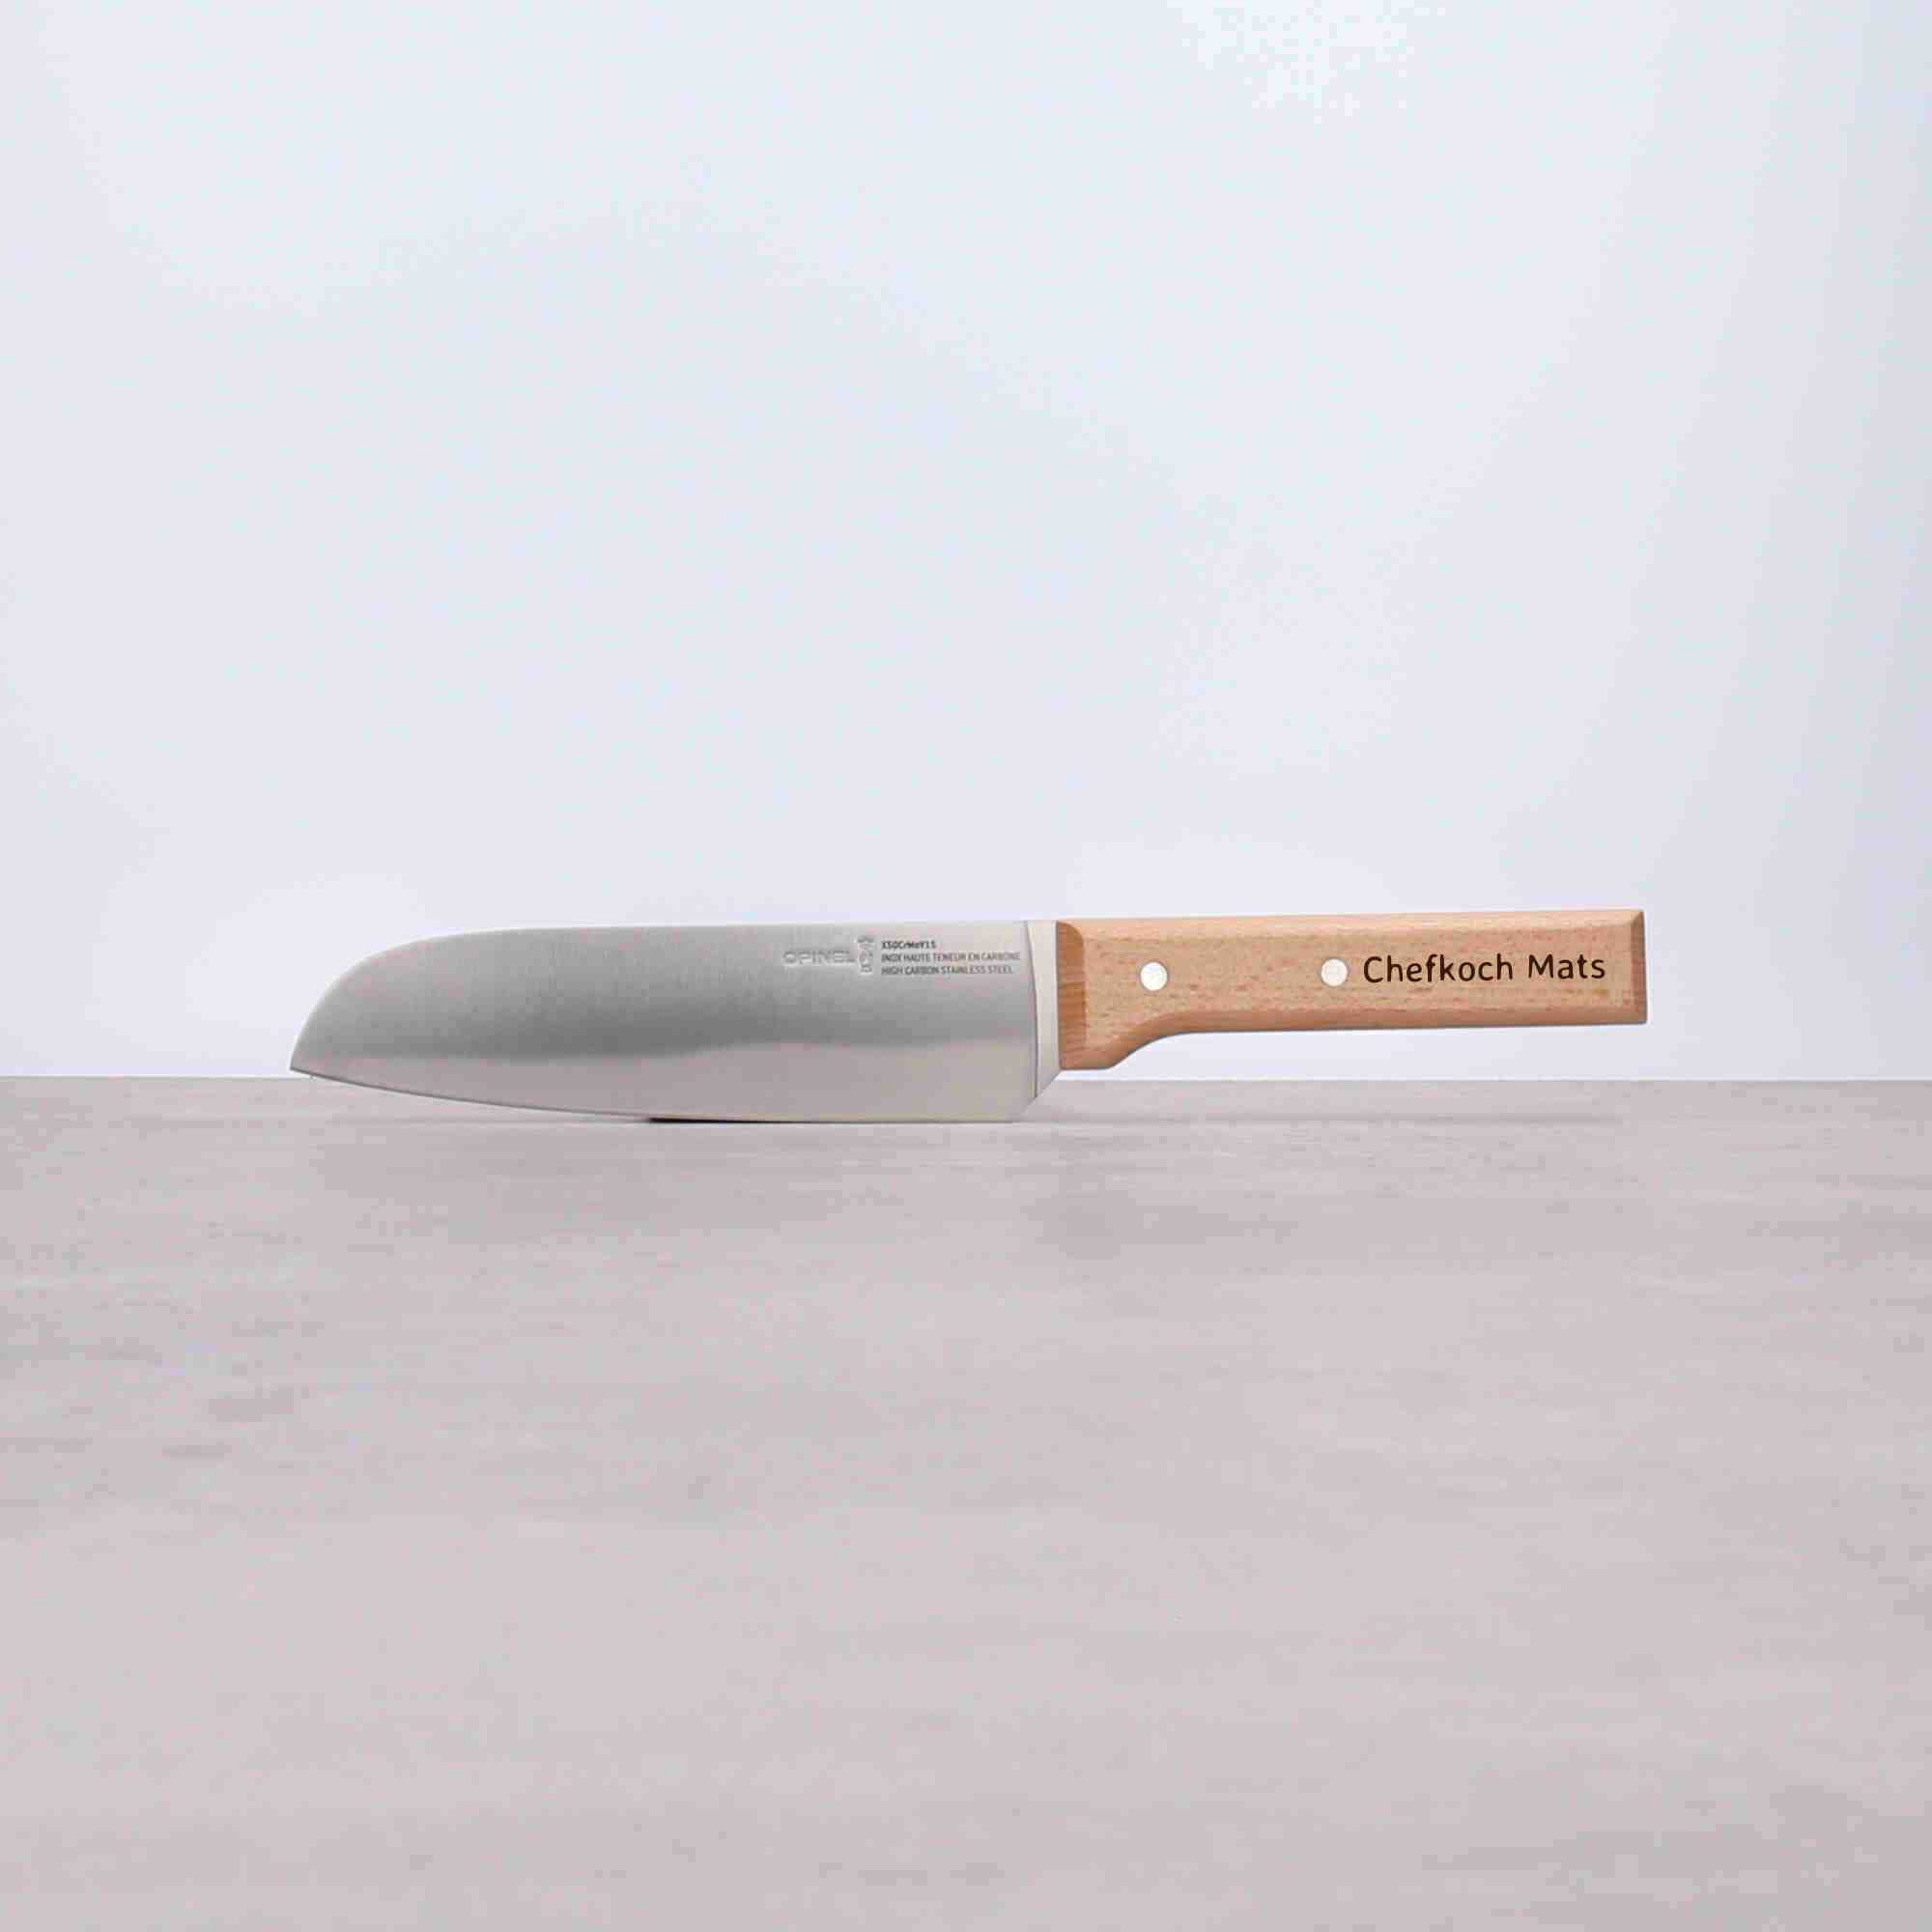 Personalisiertes großes Küchenmesser auf Holzgriff mit Namen oder Text auf Wunsch zum selber designen, gut geeignet für die Küche und daher eine tolle Geschenkidee für Personen die gerne Kochen